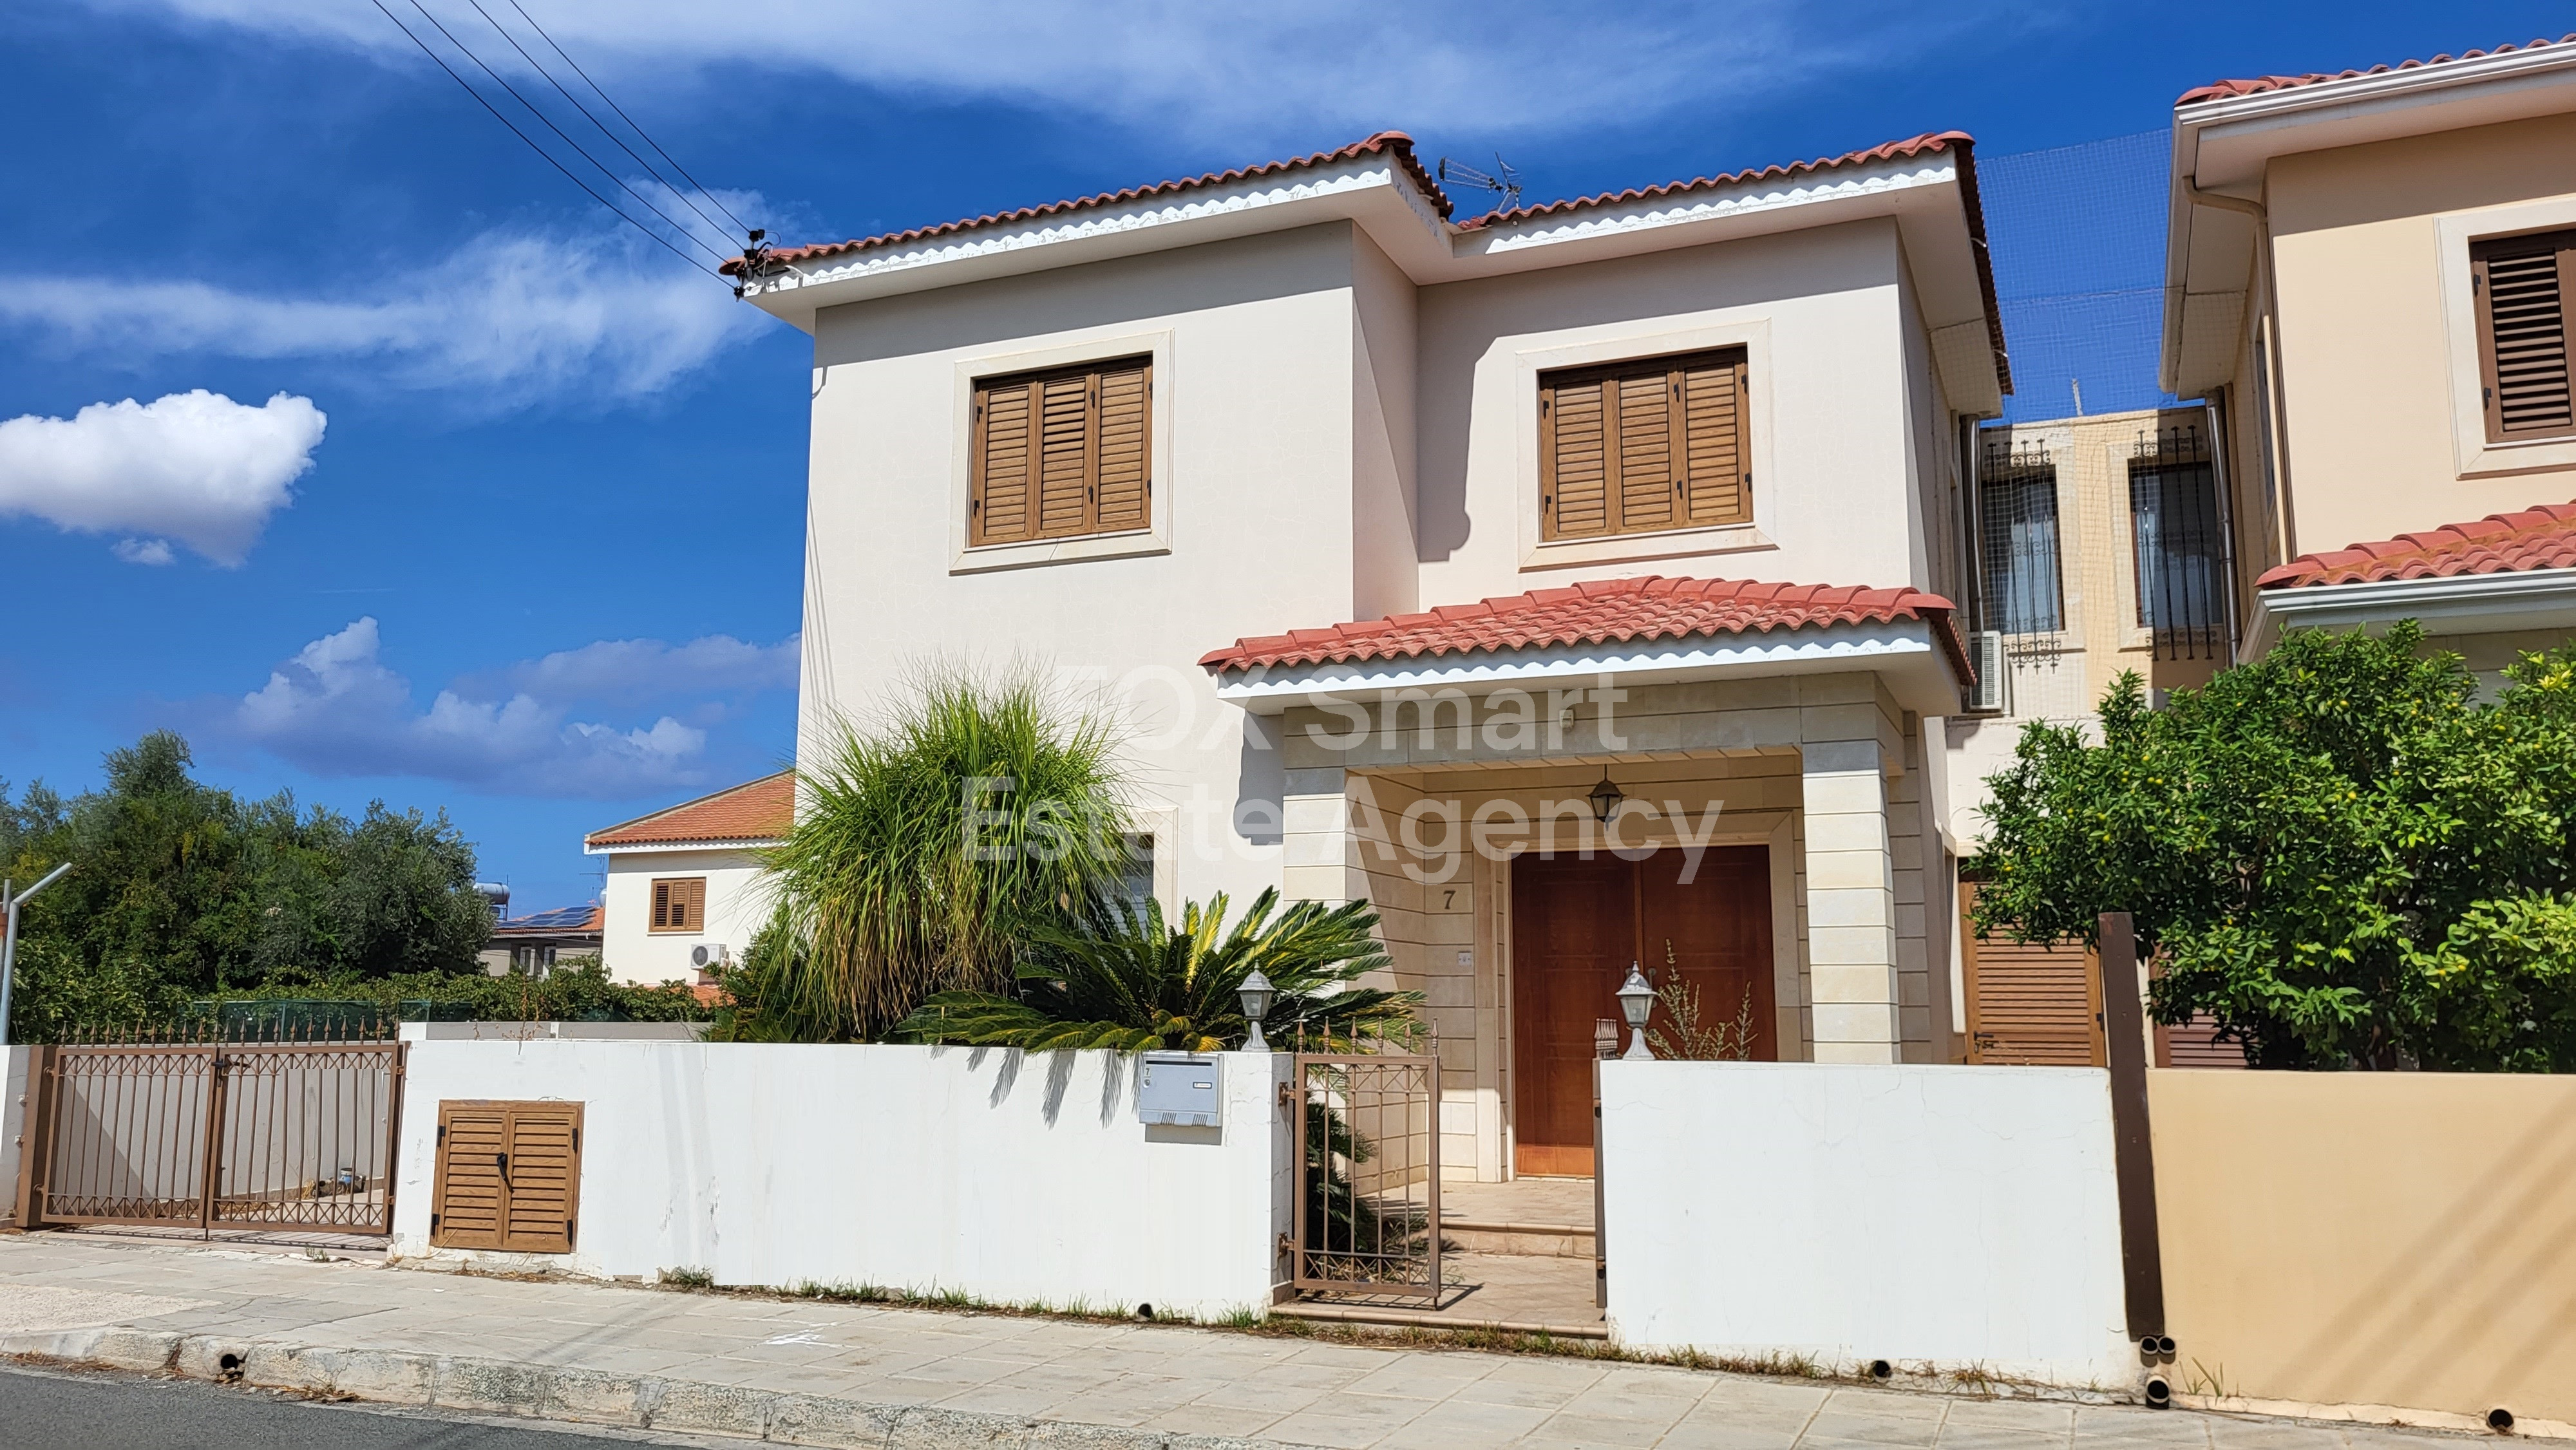 House, For Sale, Nicosia, Lakatameia, Agia Paraskevi  4 Bedr.....